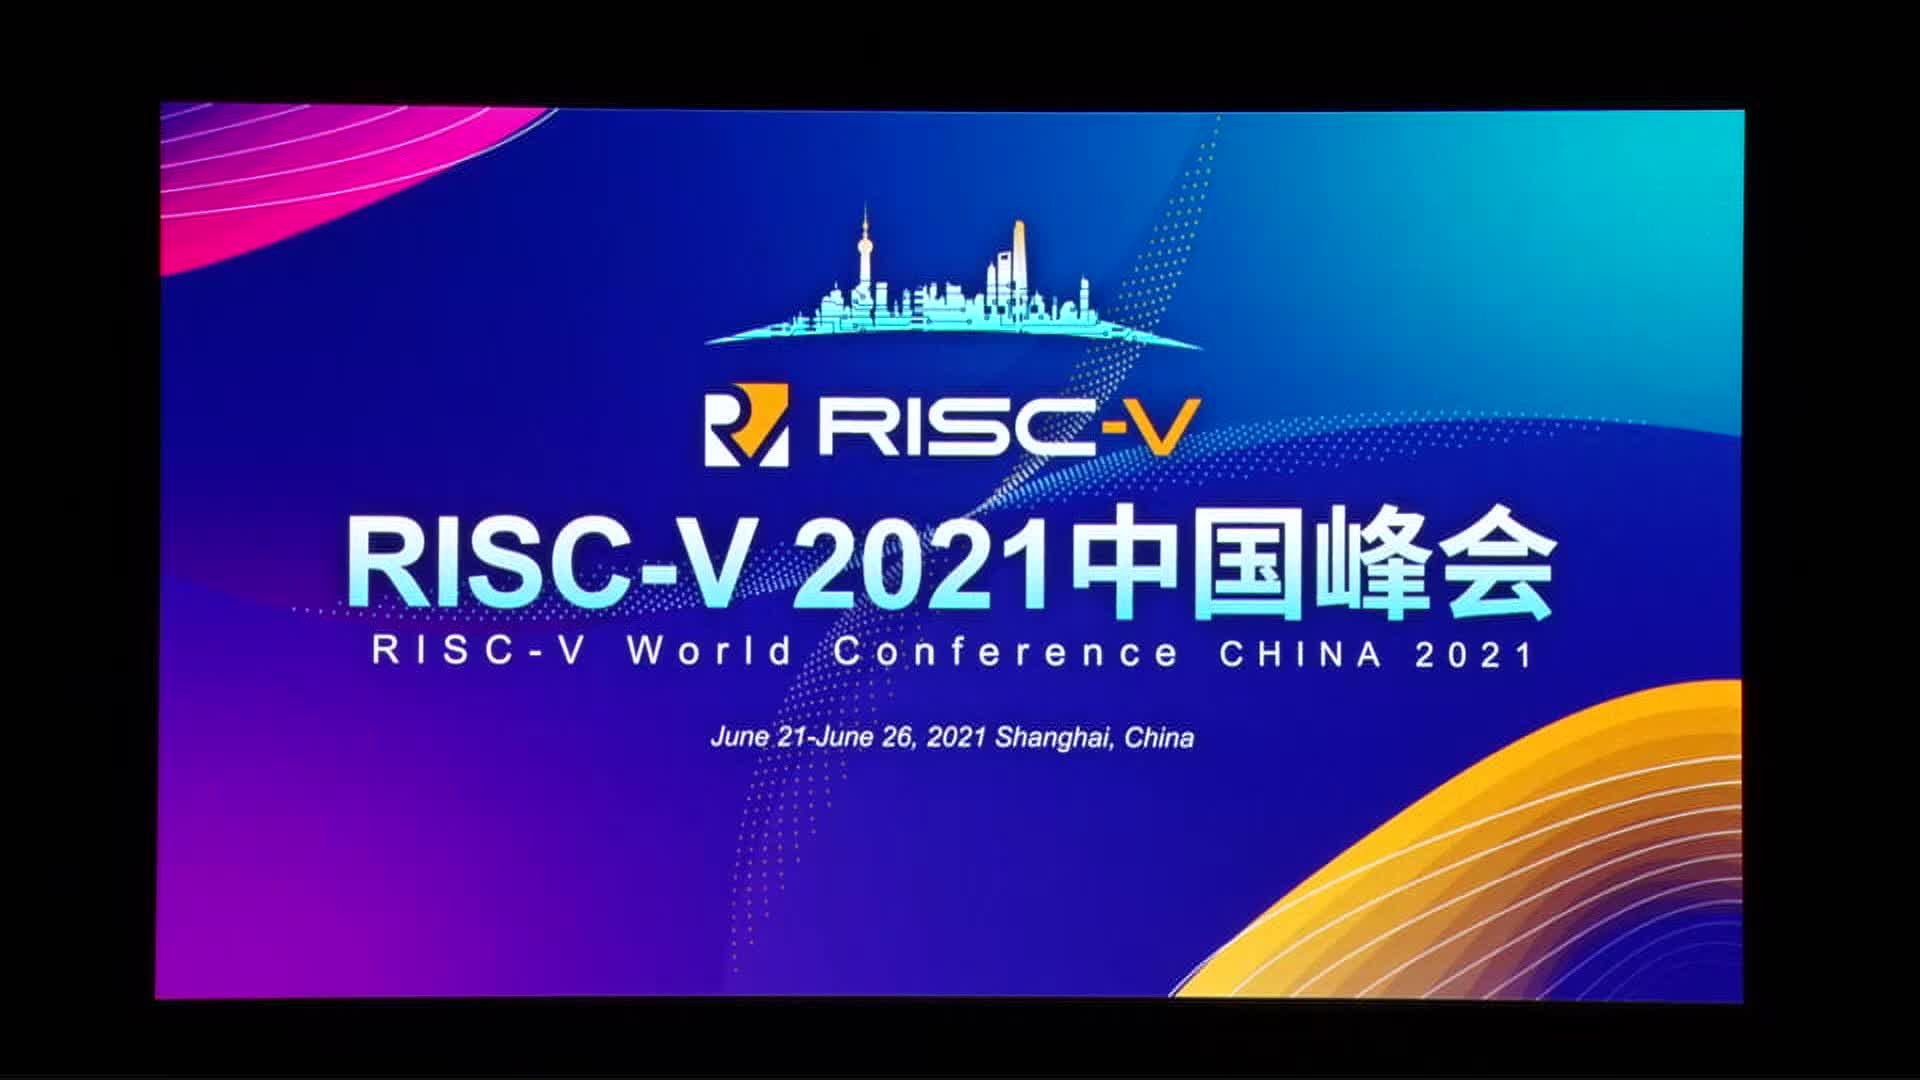 程斌@阿里巴巴 - 阿里云基础软件 C_C++ 编译器工作现状和展望 - 第一届 RISC-V 中国